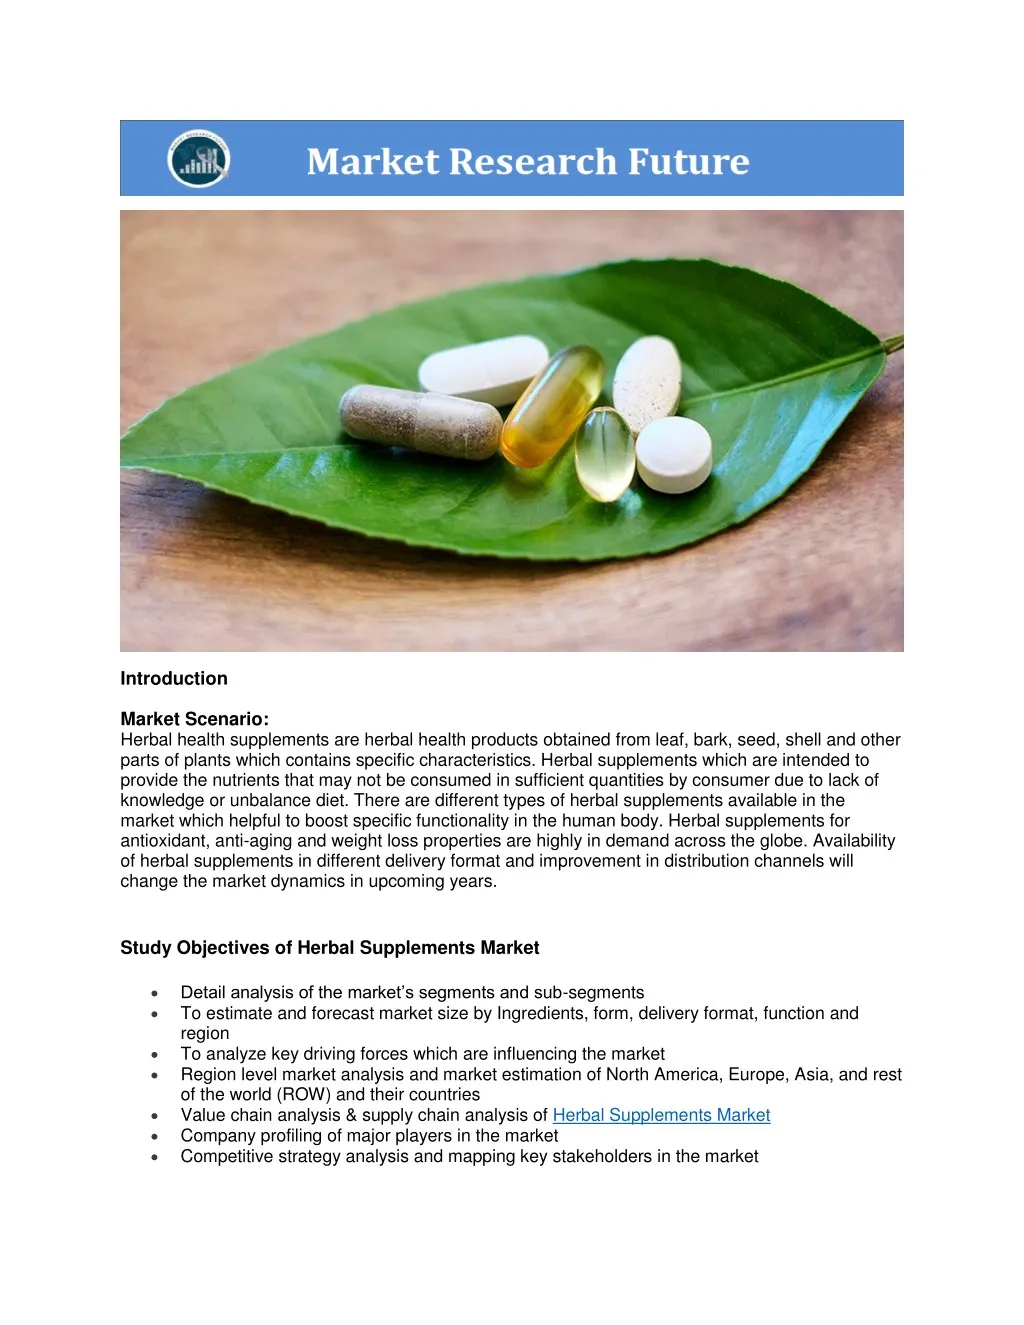 introduction market scenario herbal health